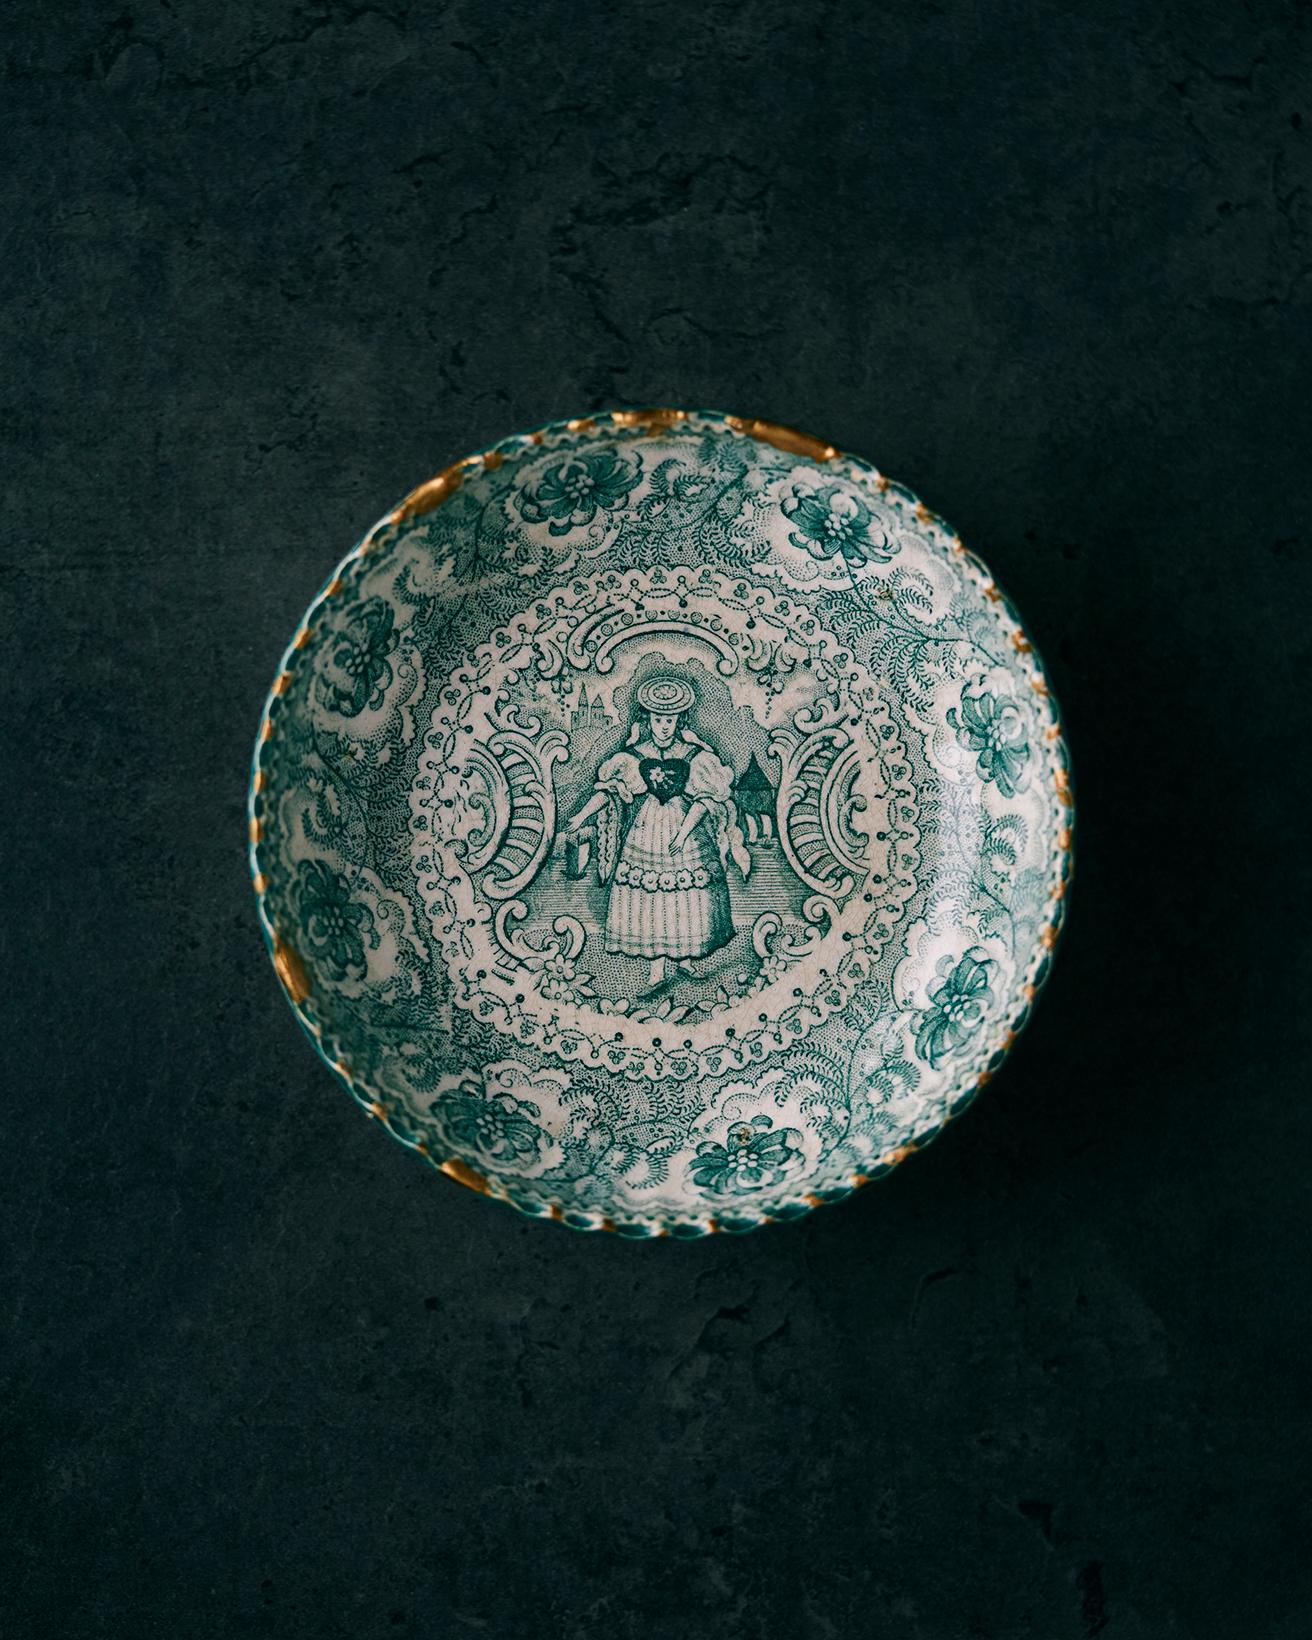 イギリス〈ドーソン〉社の19世紀前半〜中頃の骨董品。洋のものなのにどこか日本のお皿のような雰囲気もあり、料理に合わせやすいです。欠けた縁は自分で金継ぎしながら大切に使っています。